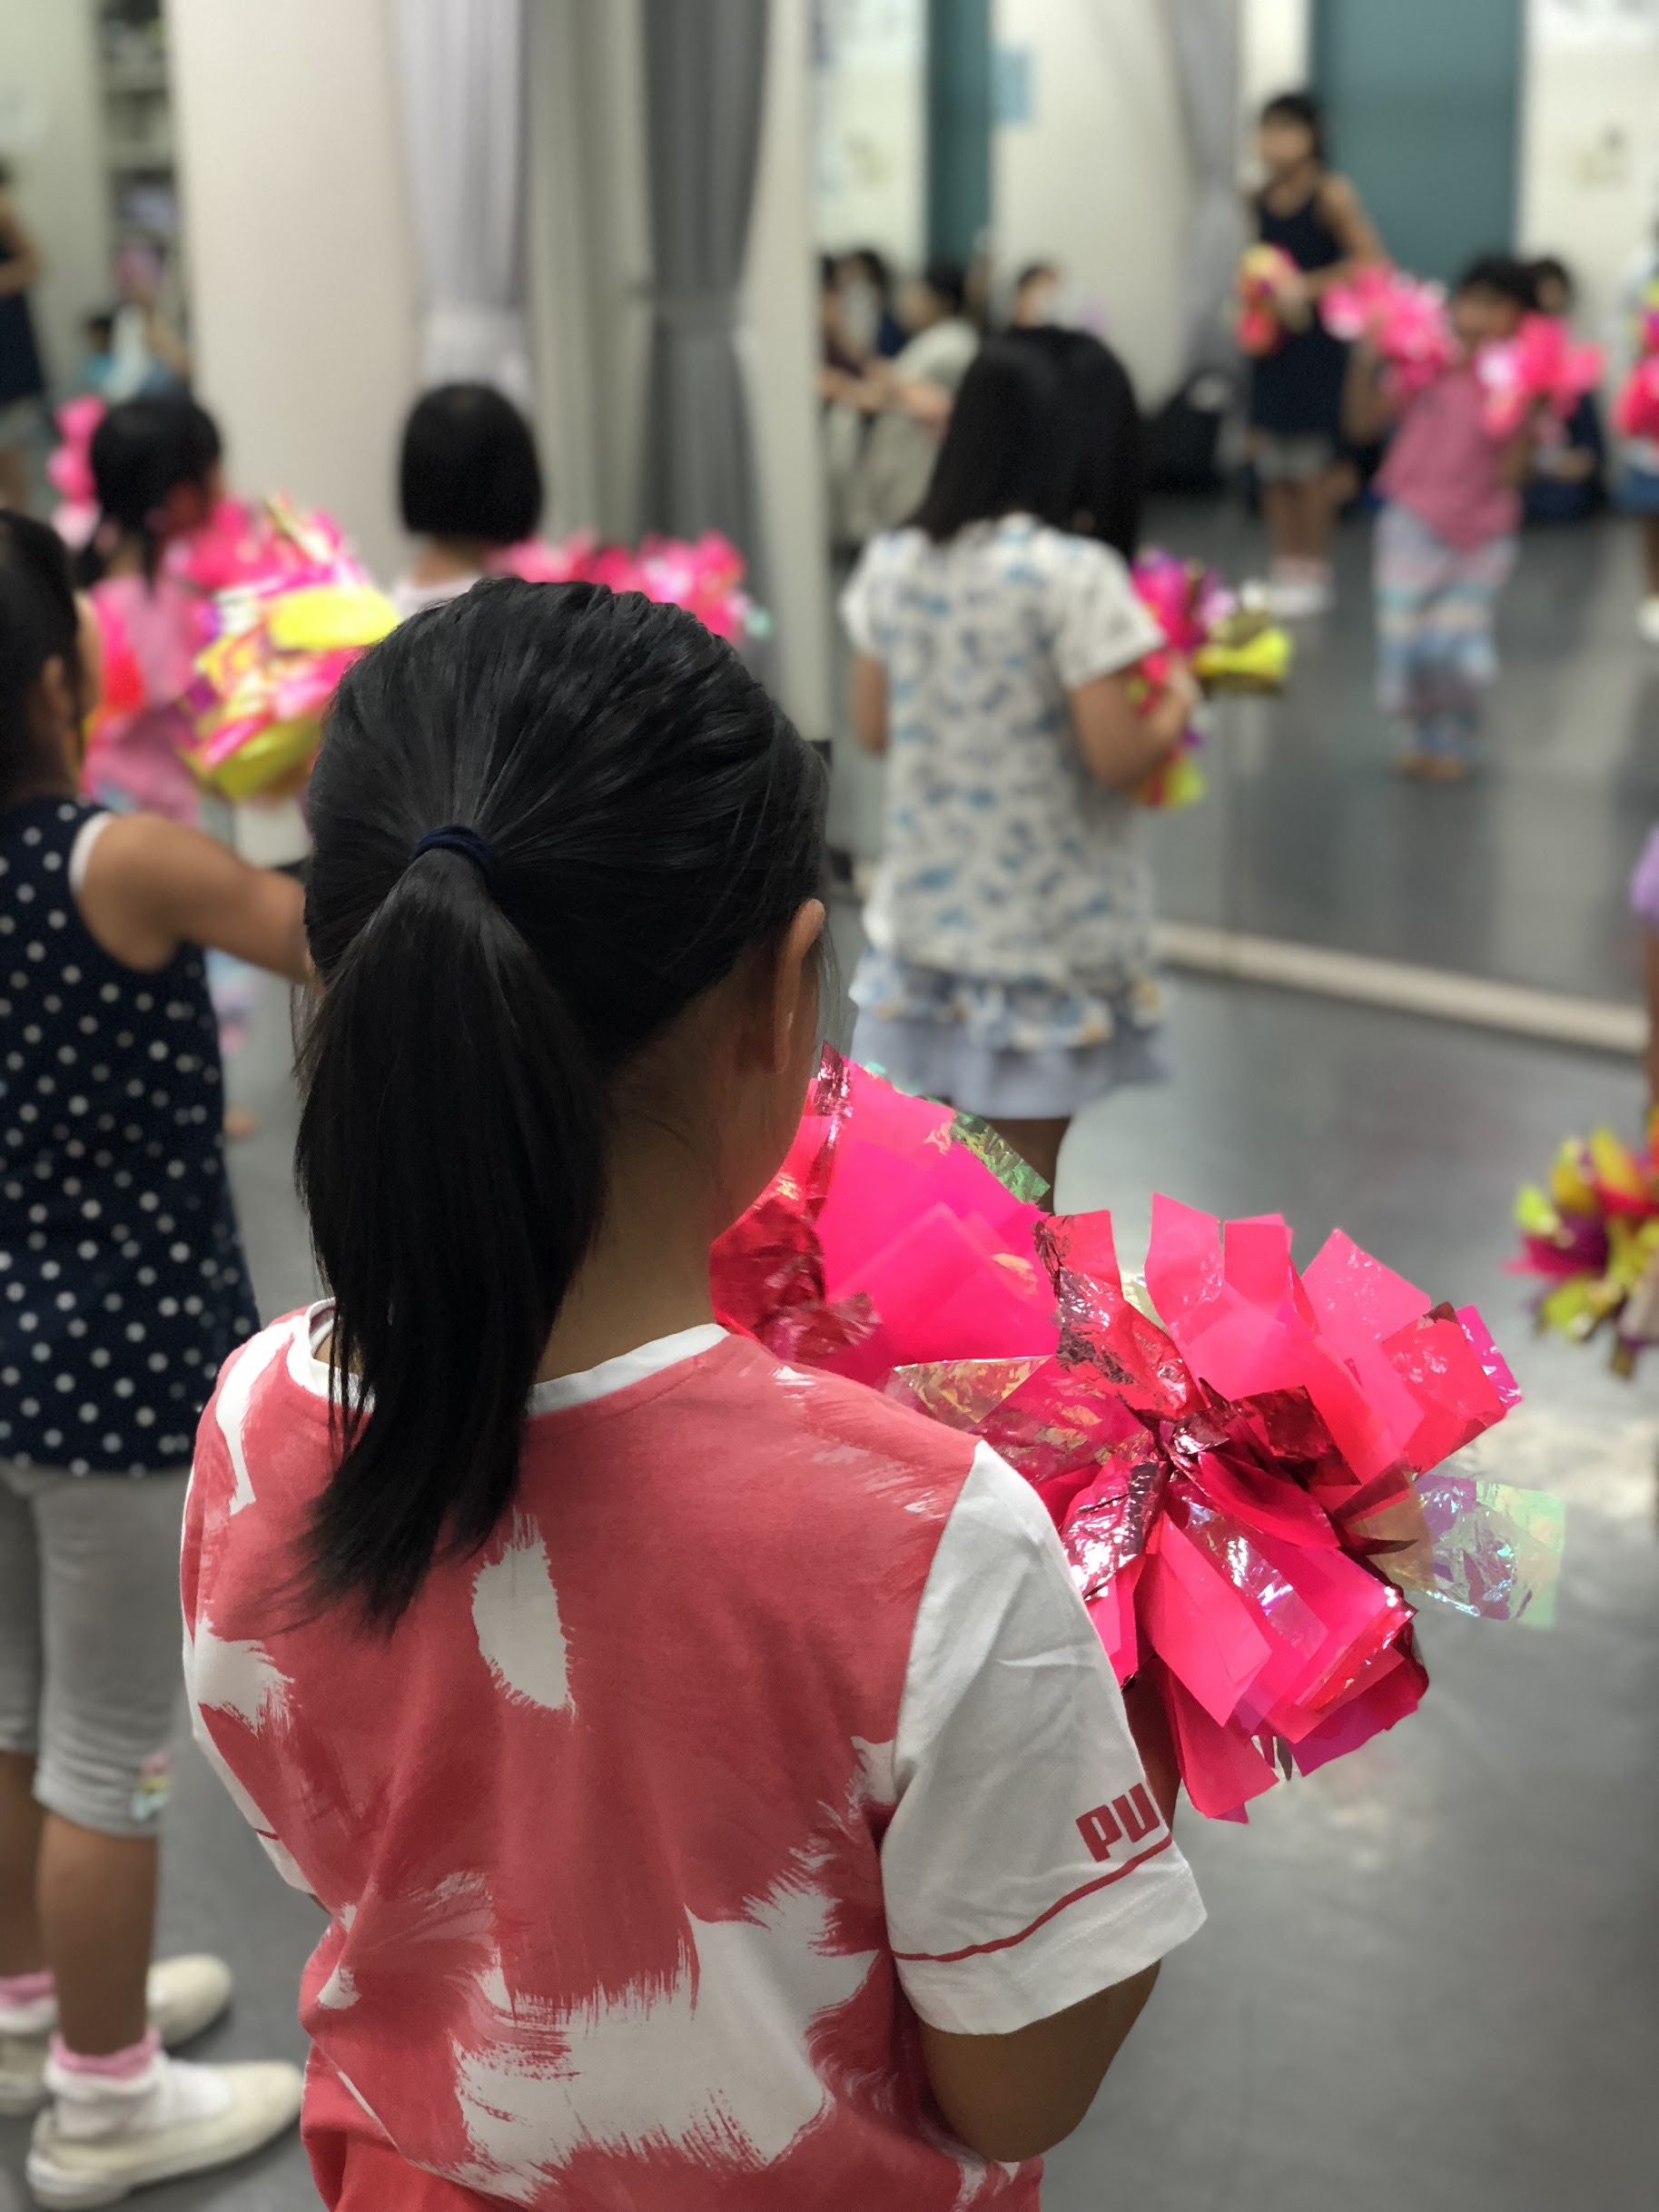 綺麗なポニーテールの作り方 Gravis 神奈川 東京で人気のチア キッズチアダンススクール